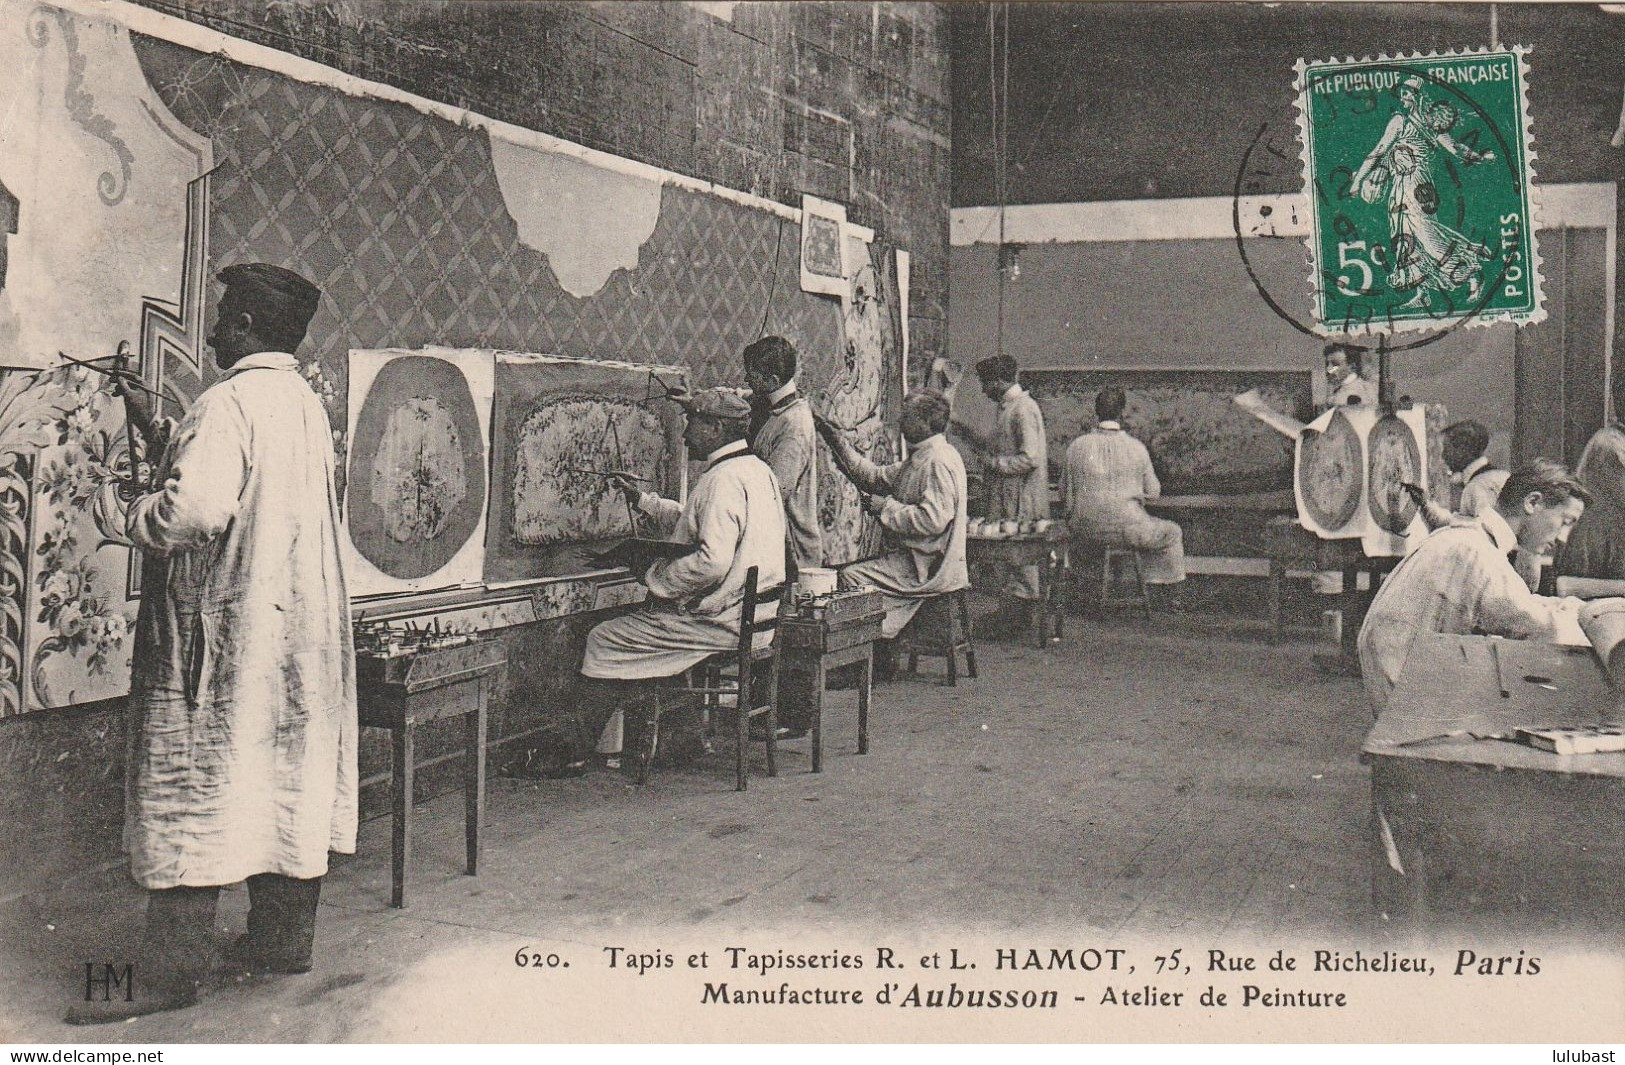 PARIS, 75 Rue De Richelieu - Tapis R. L. HAMOT D'Aubusson : Atelier De Peinture. - Distrito: 02